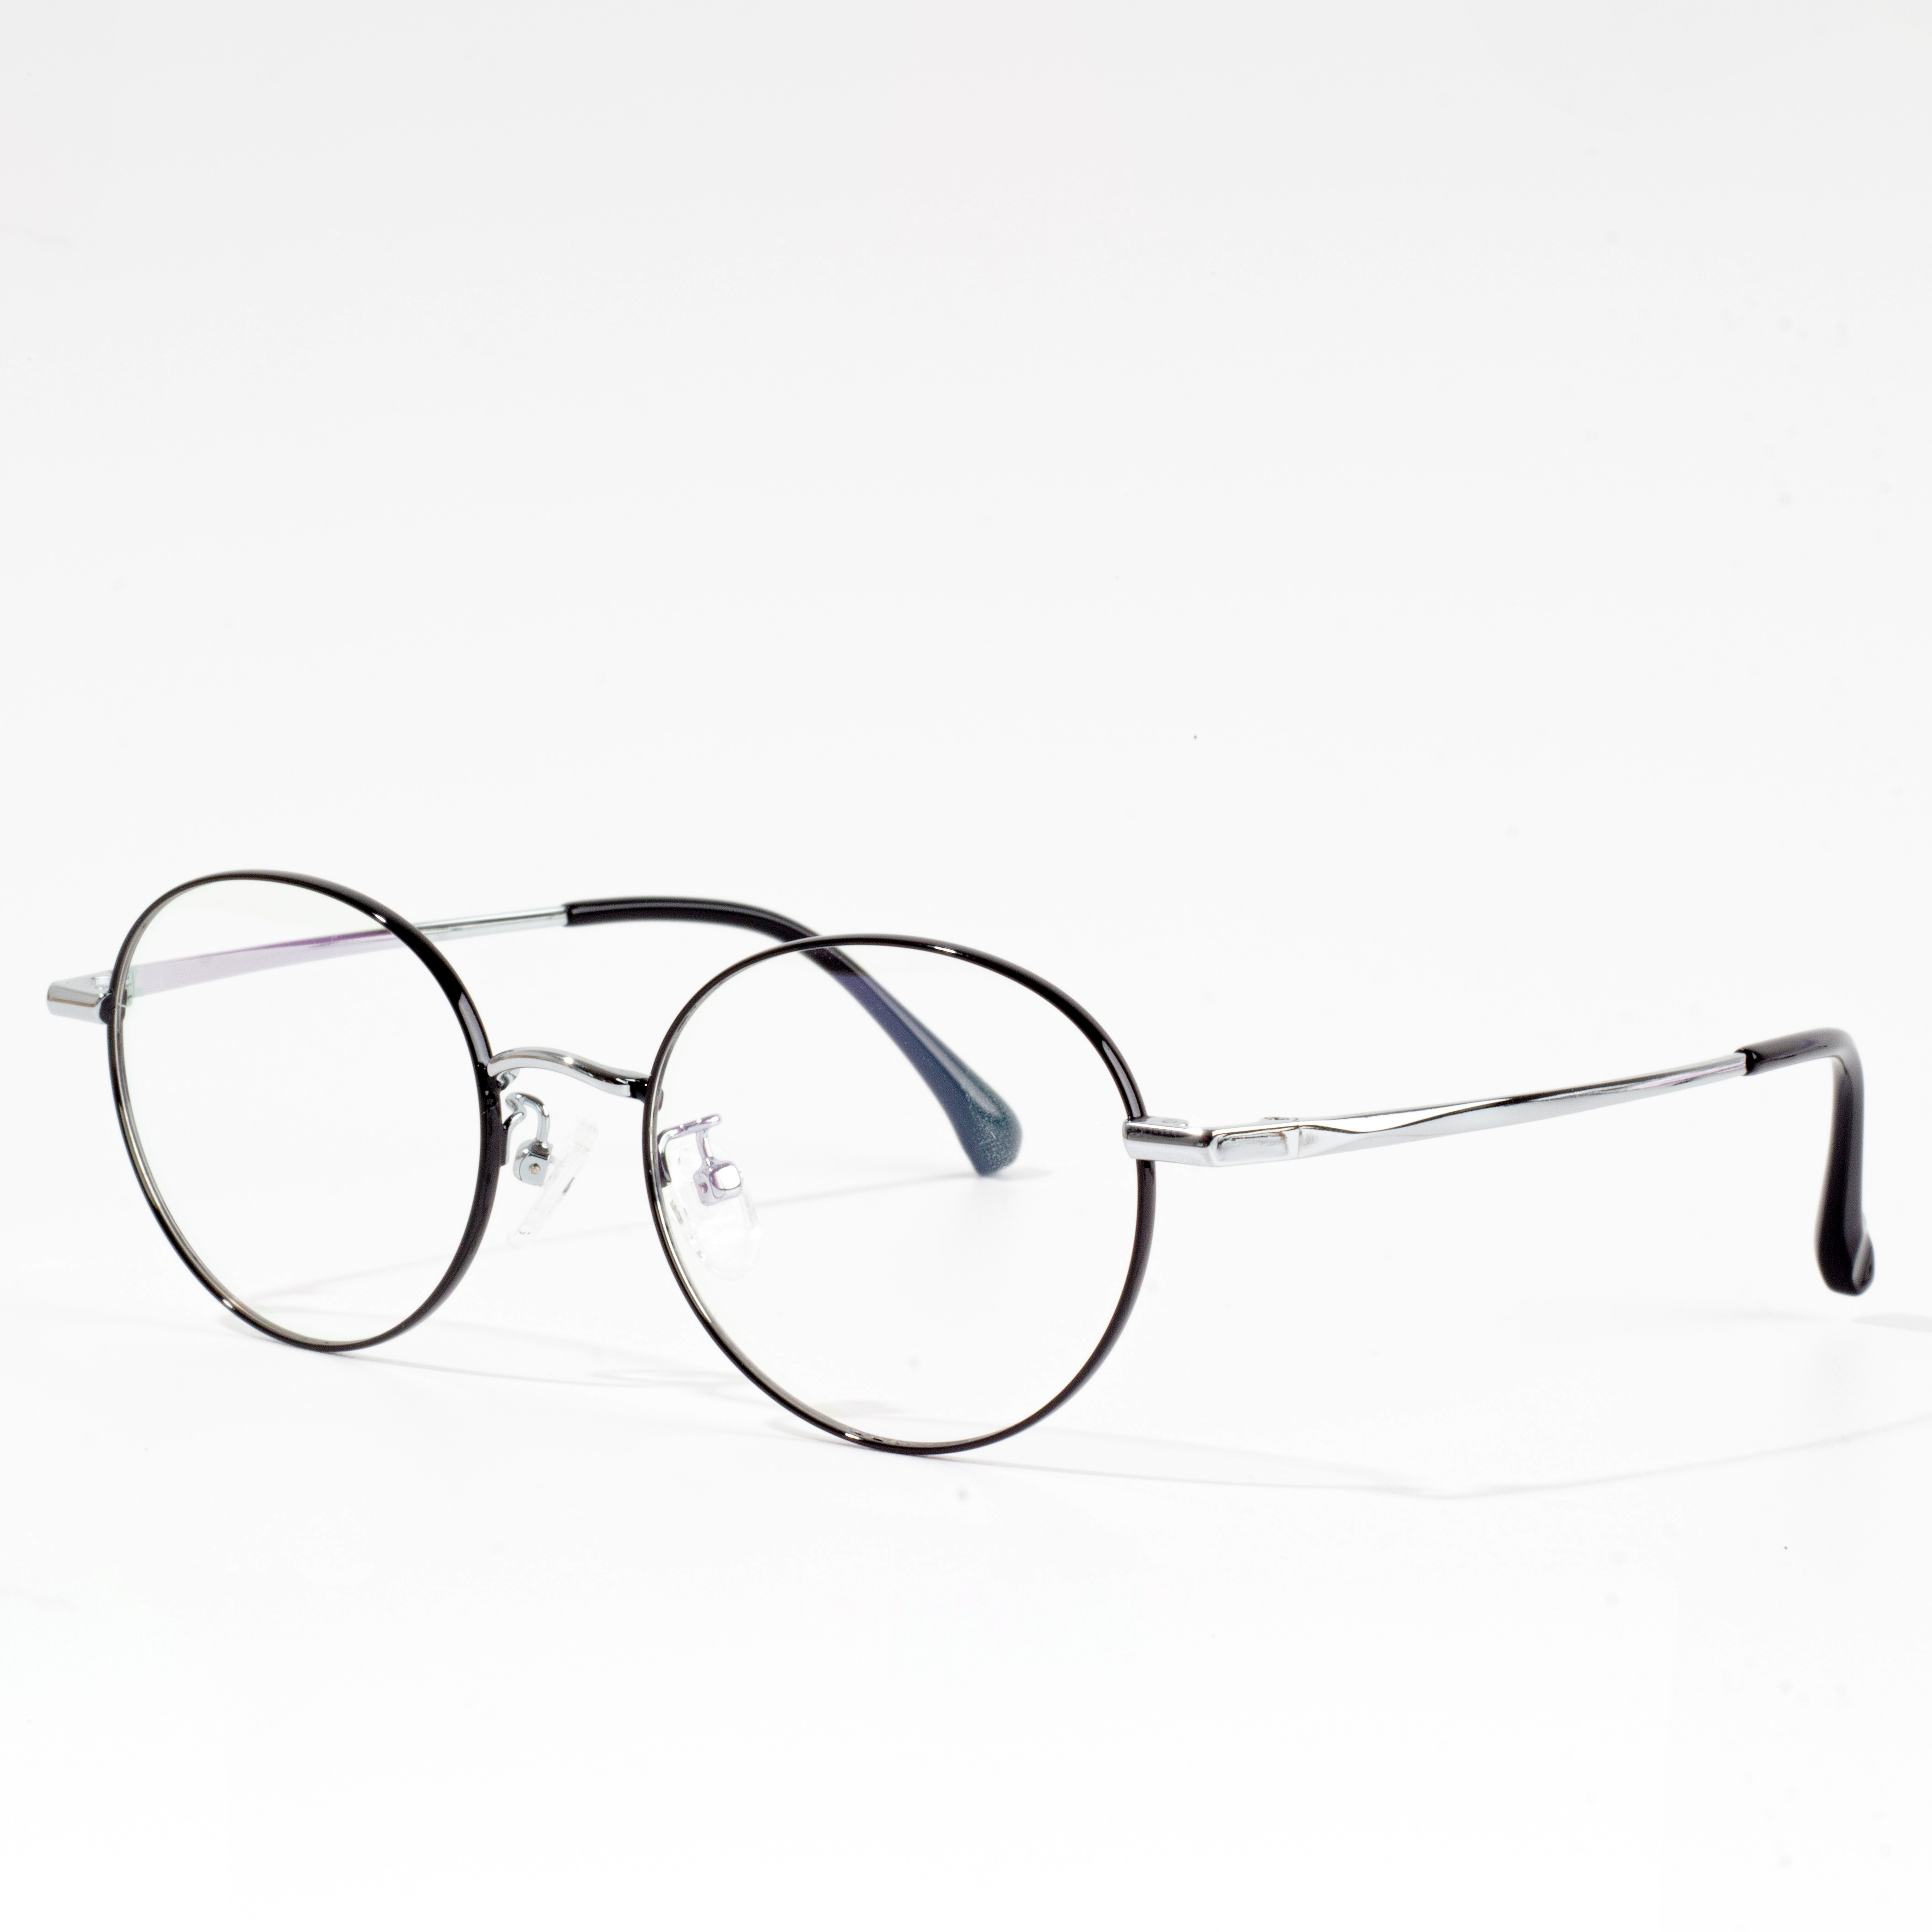 pigura logam pikeun eyeglasses